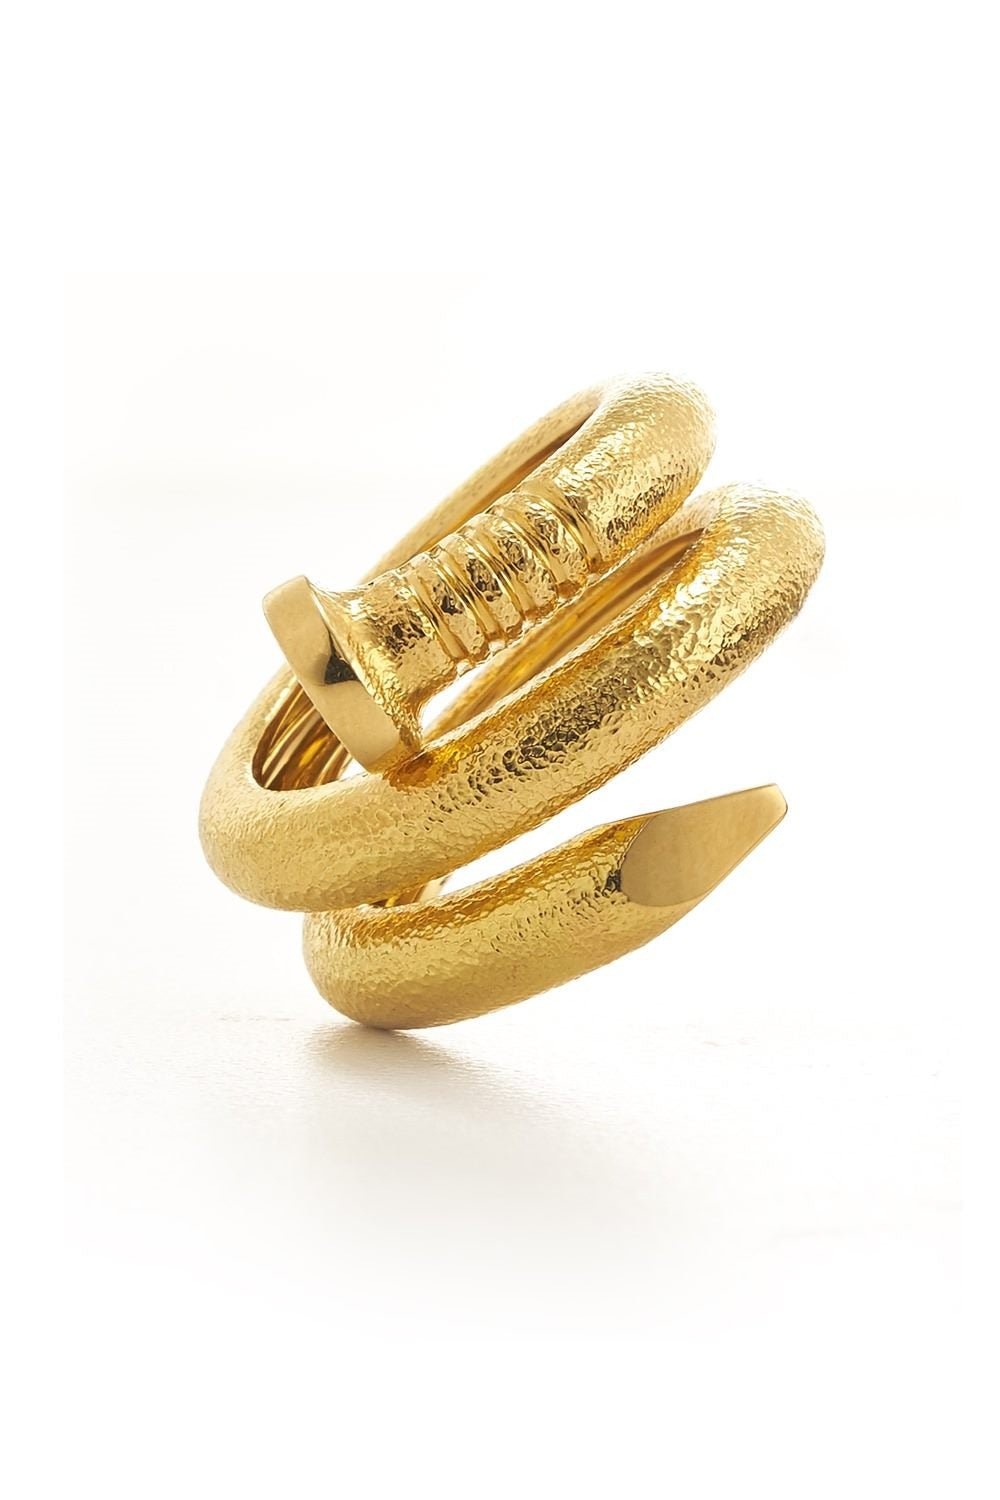 Hammered Gold Nail Ring - 1